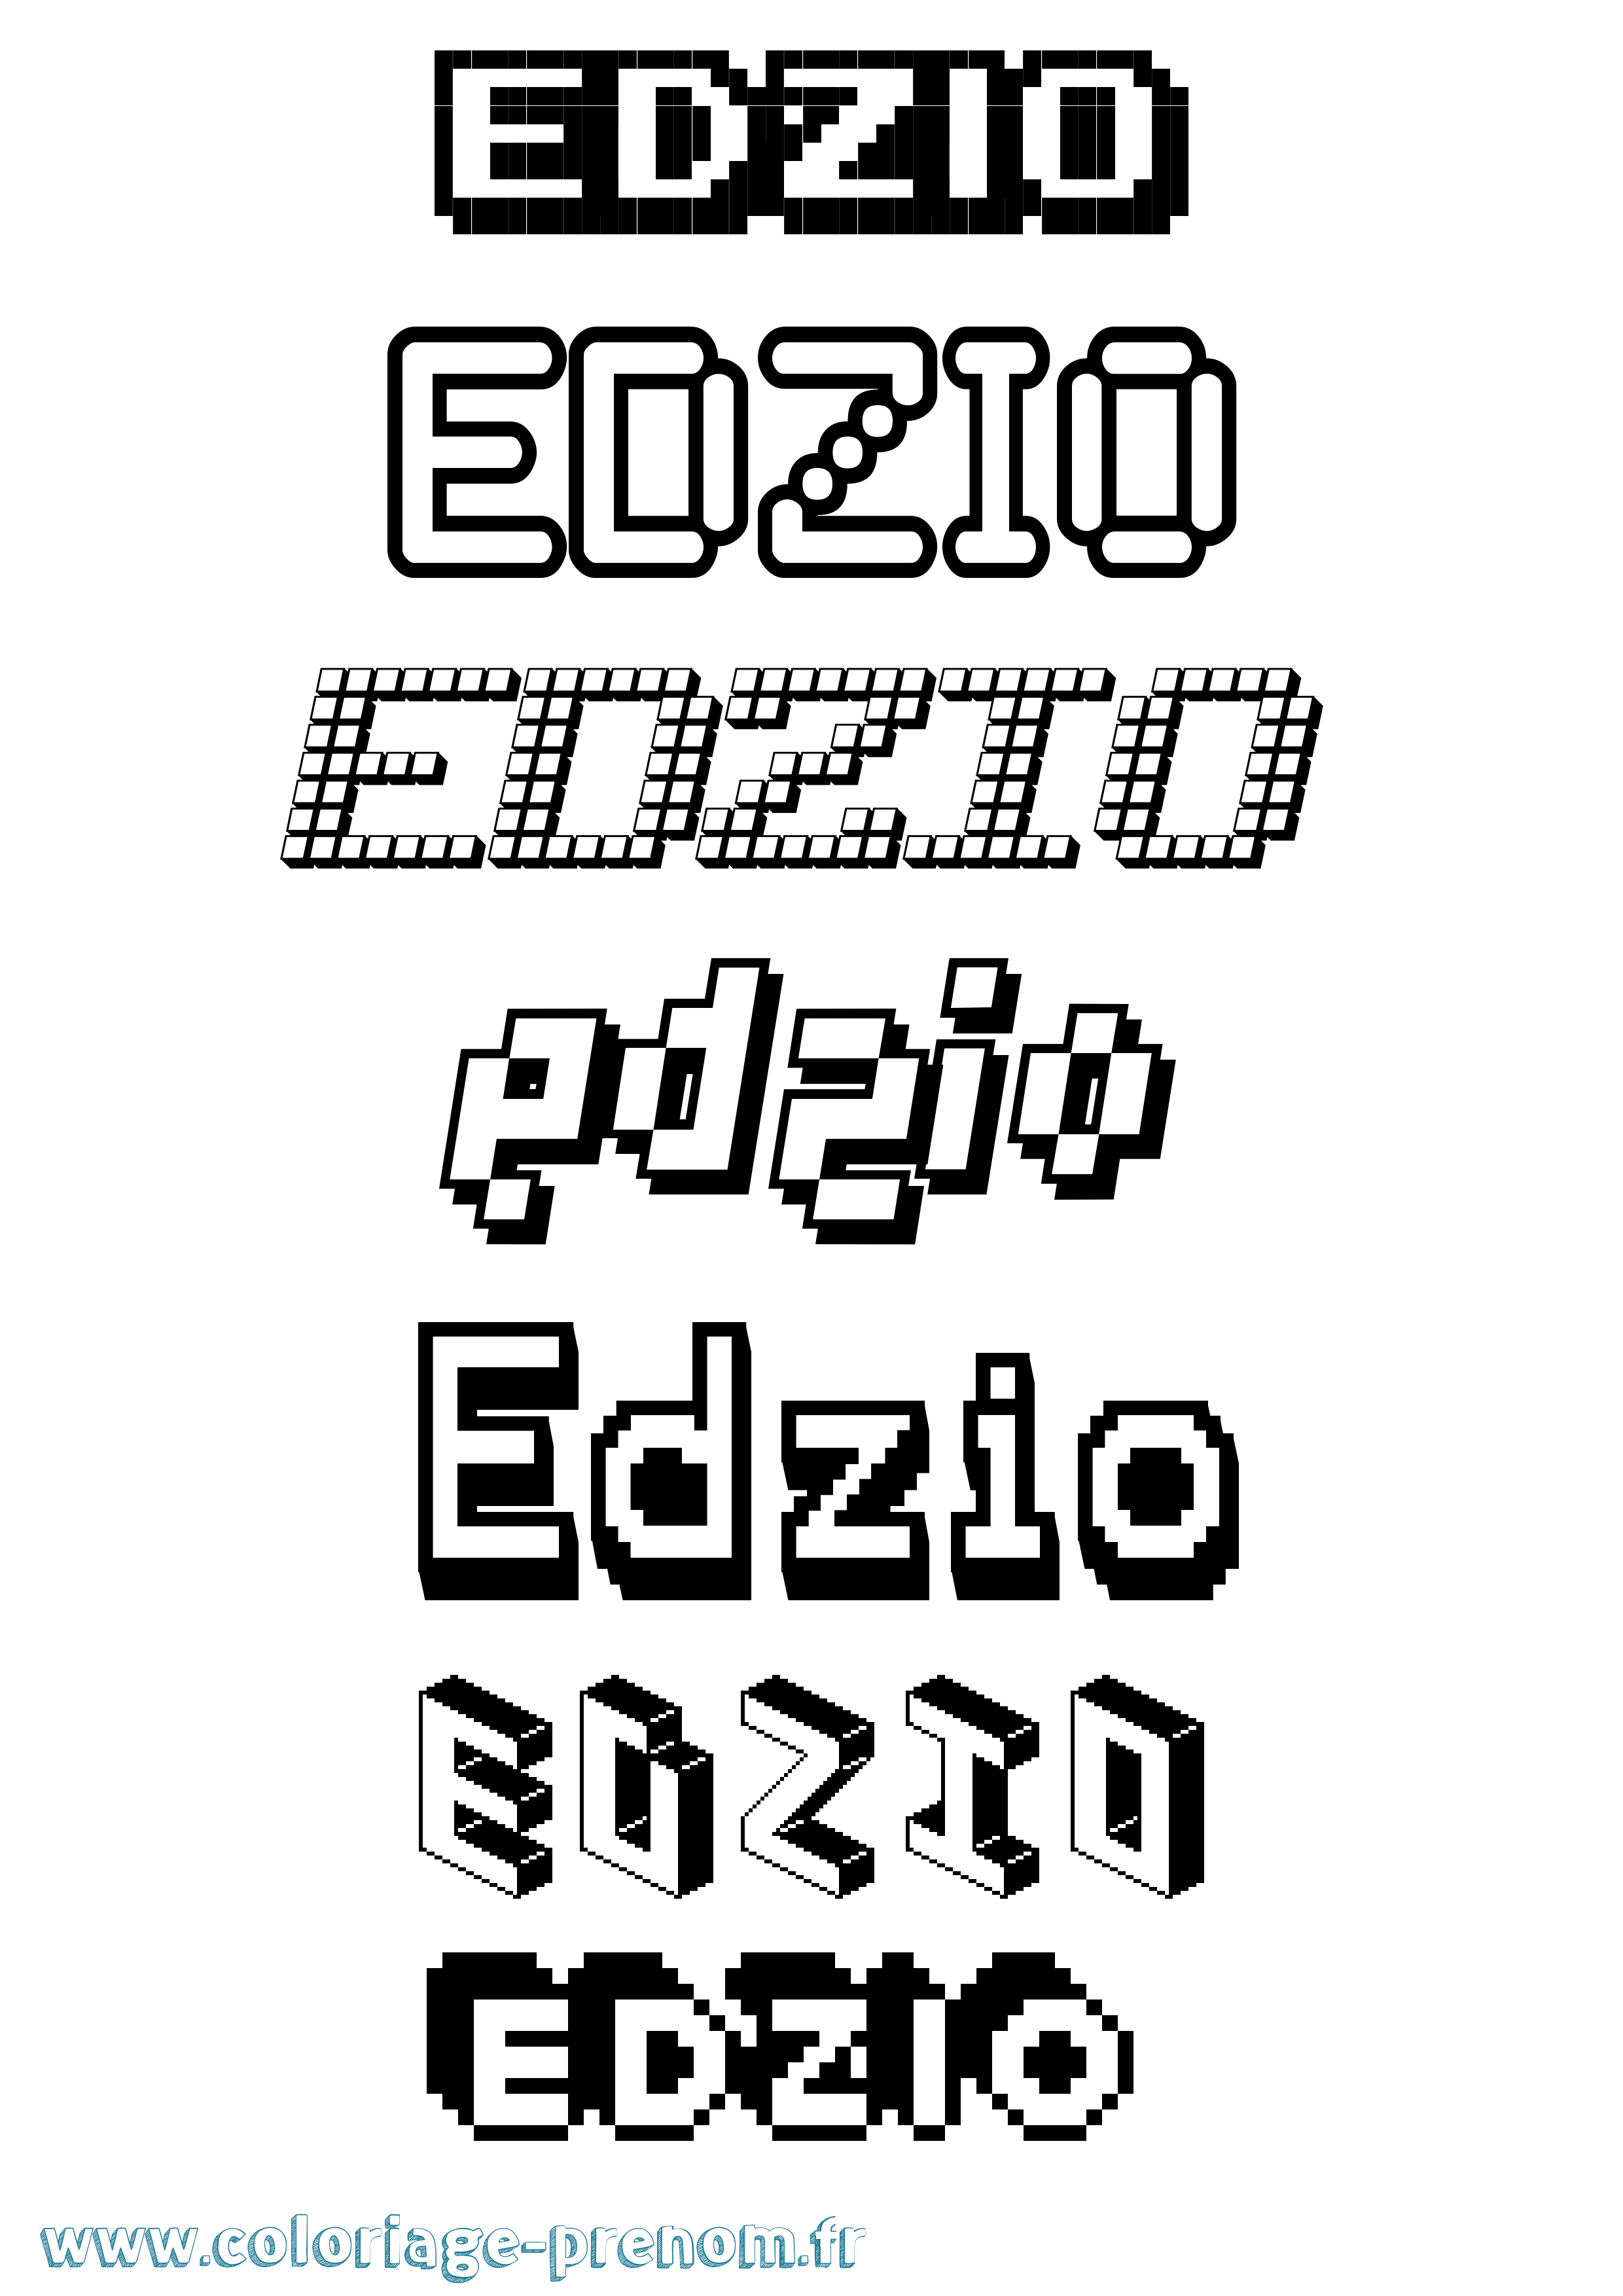 Coloriage prénom Edzio Pixel